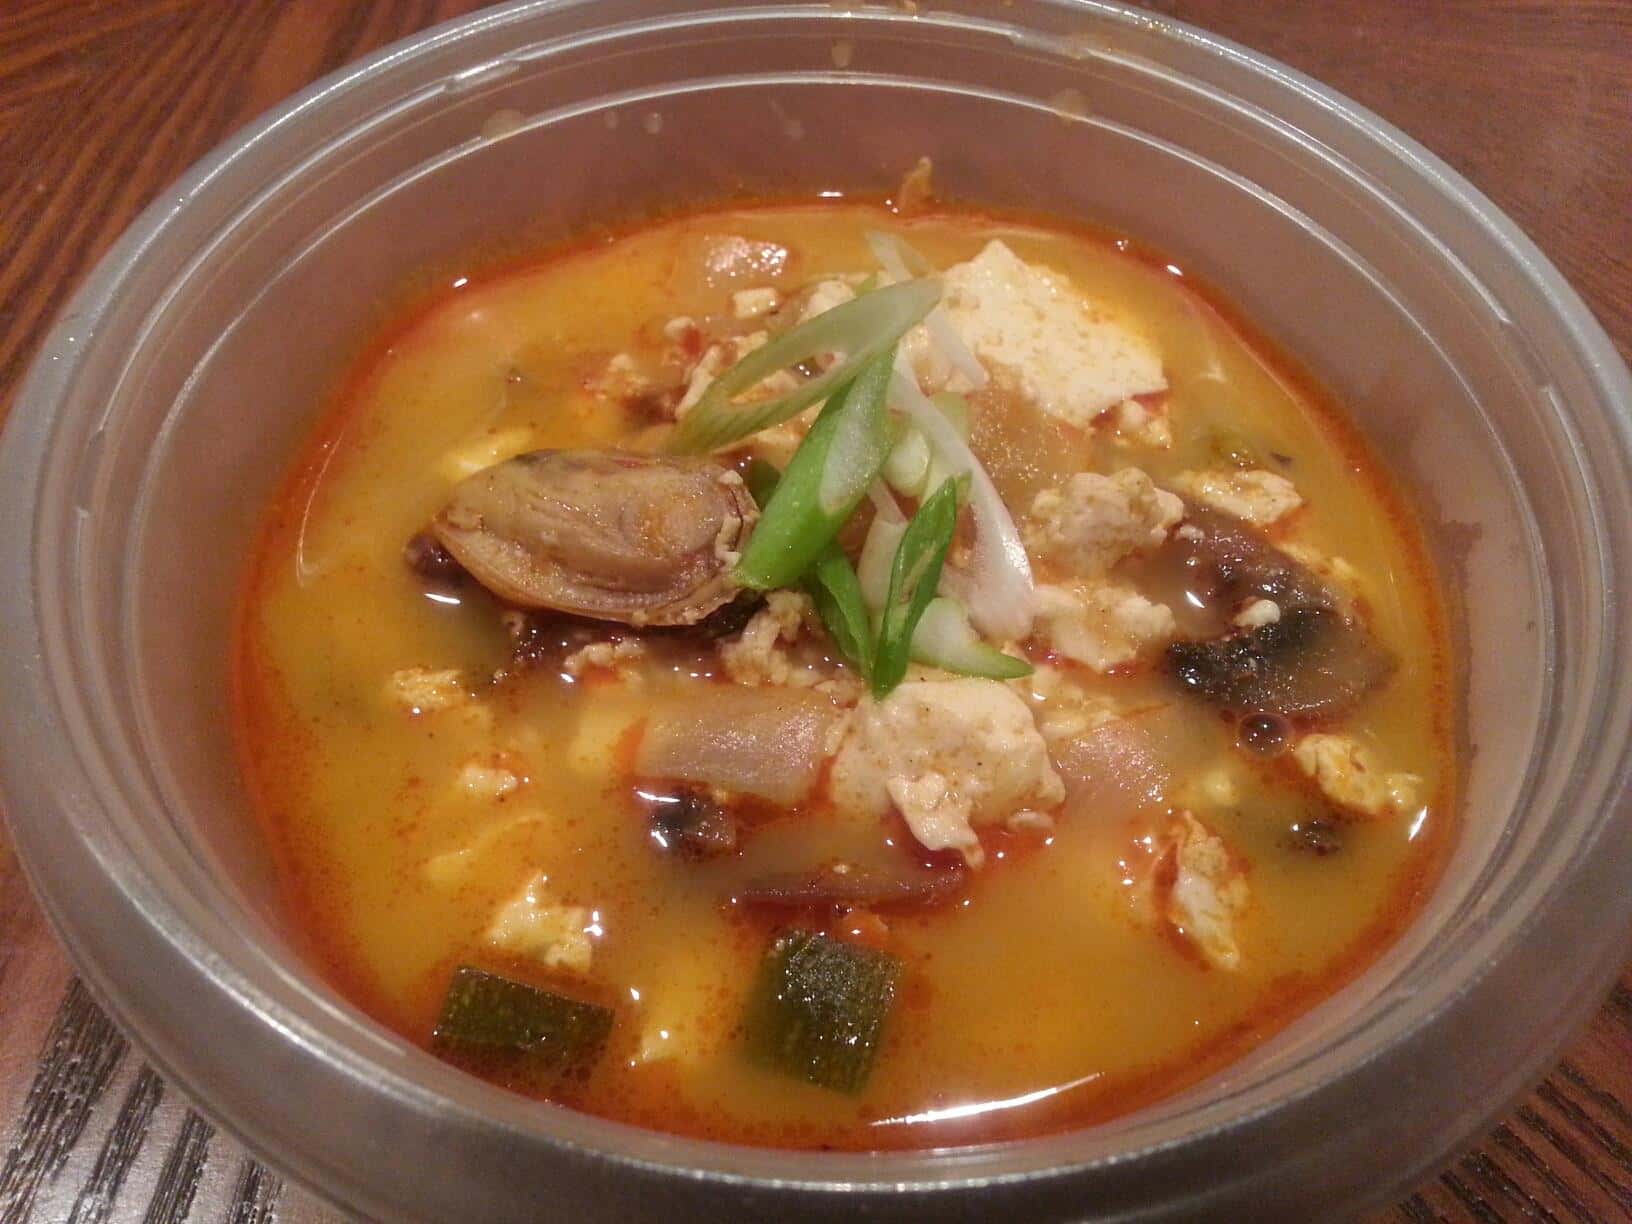 Delicious traditional Korean soup